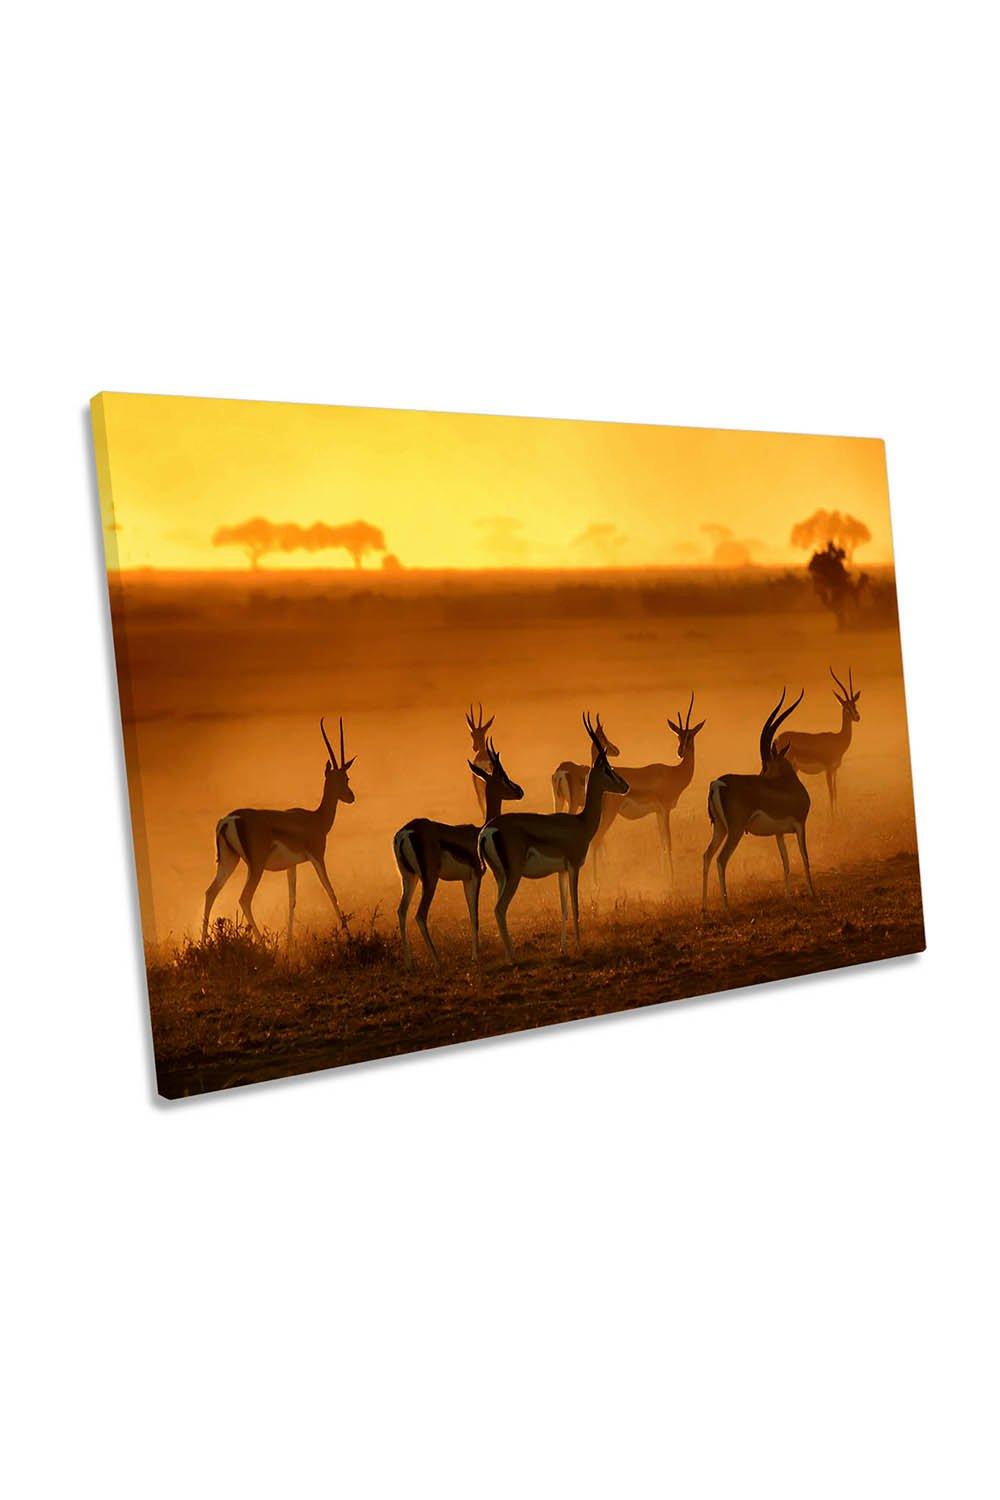 Golden Light Sunset Animals Canvas Wall Art Picture Print